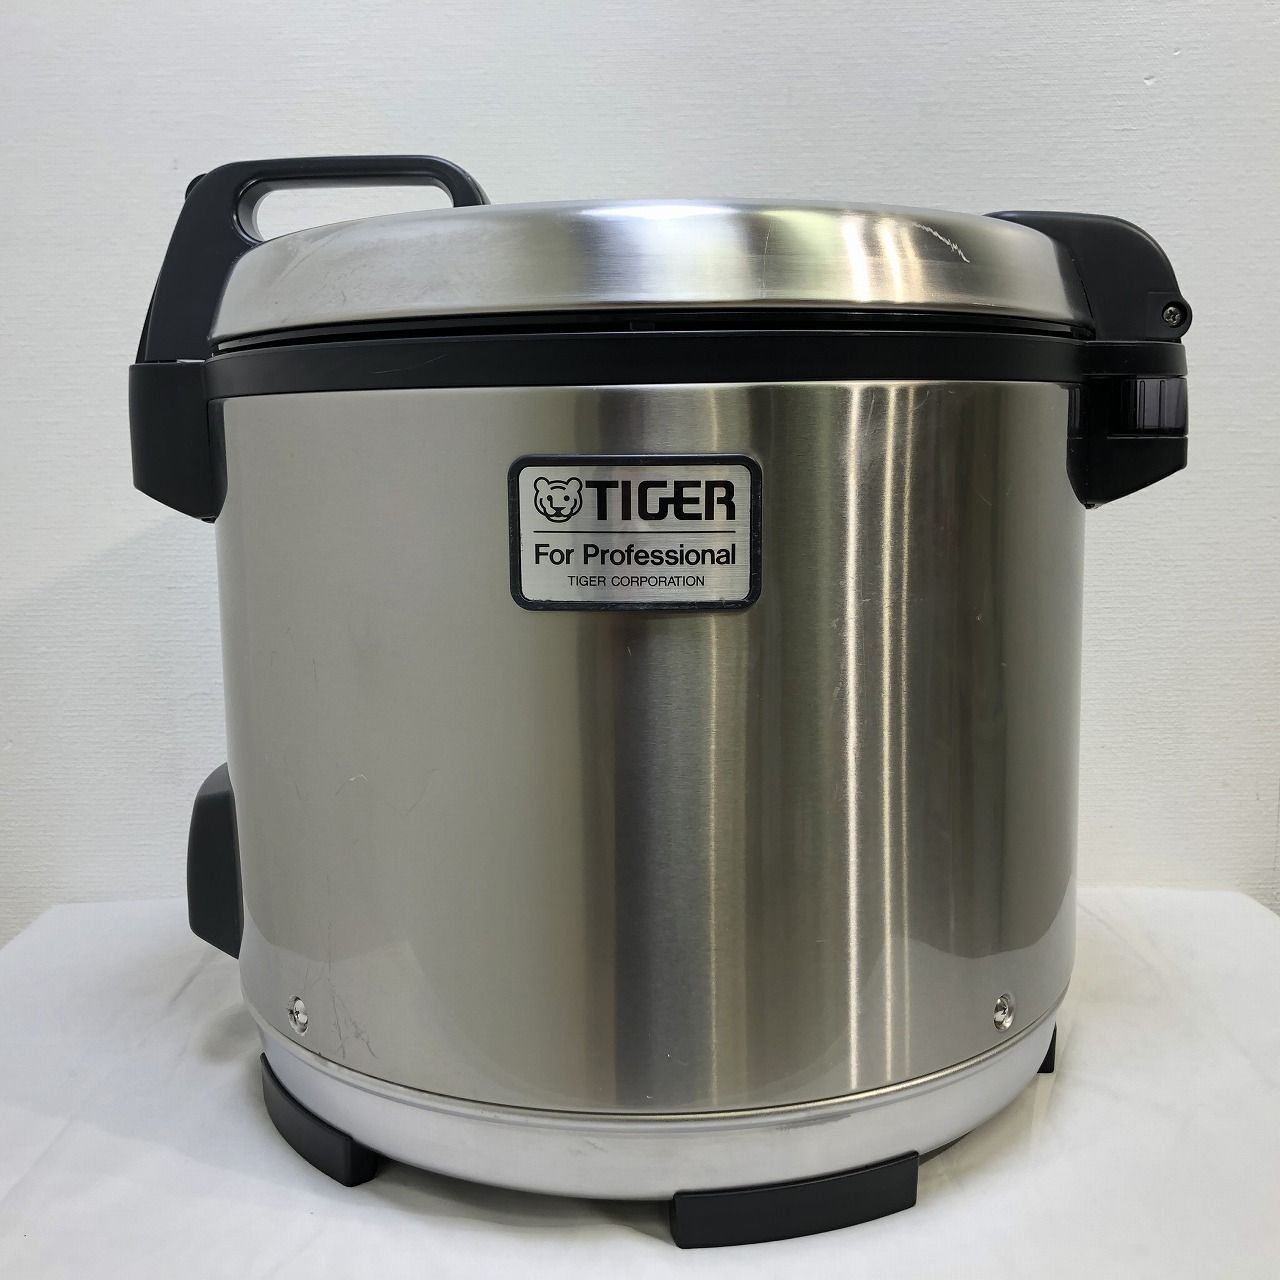 TIGER タイガー 業務用炊飯ジャー A360 2升炊き ステンレス